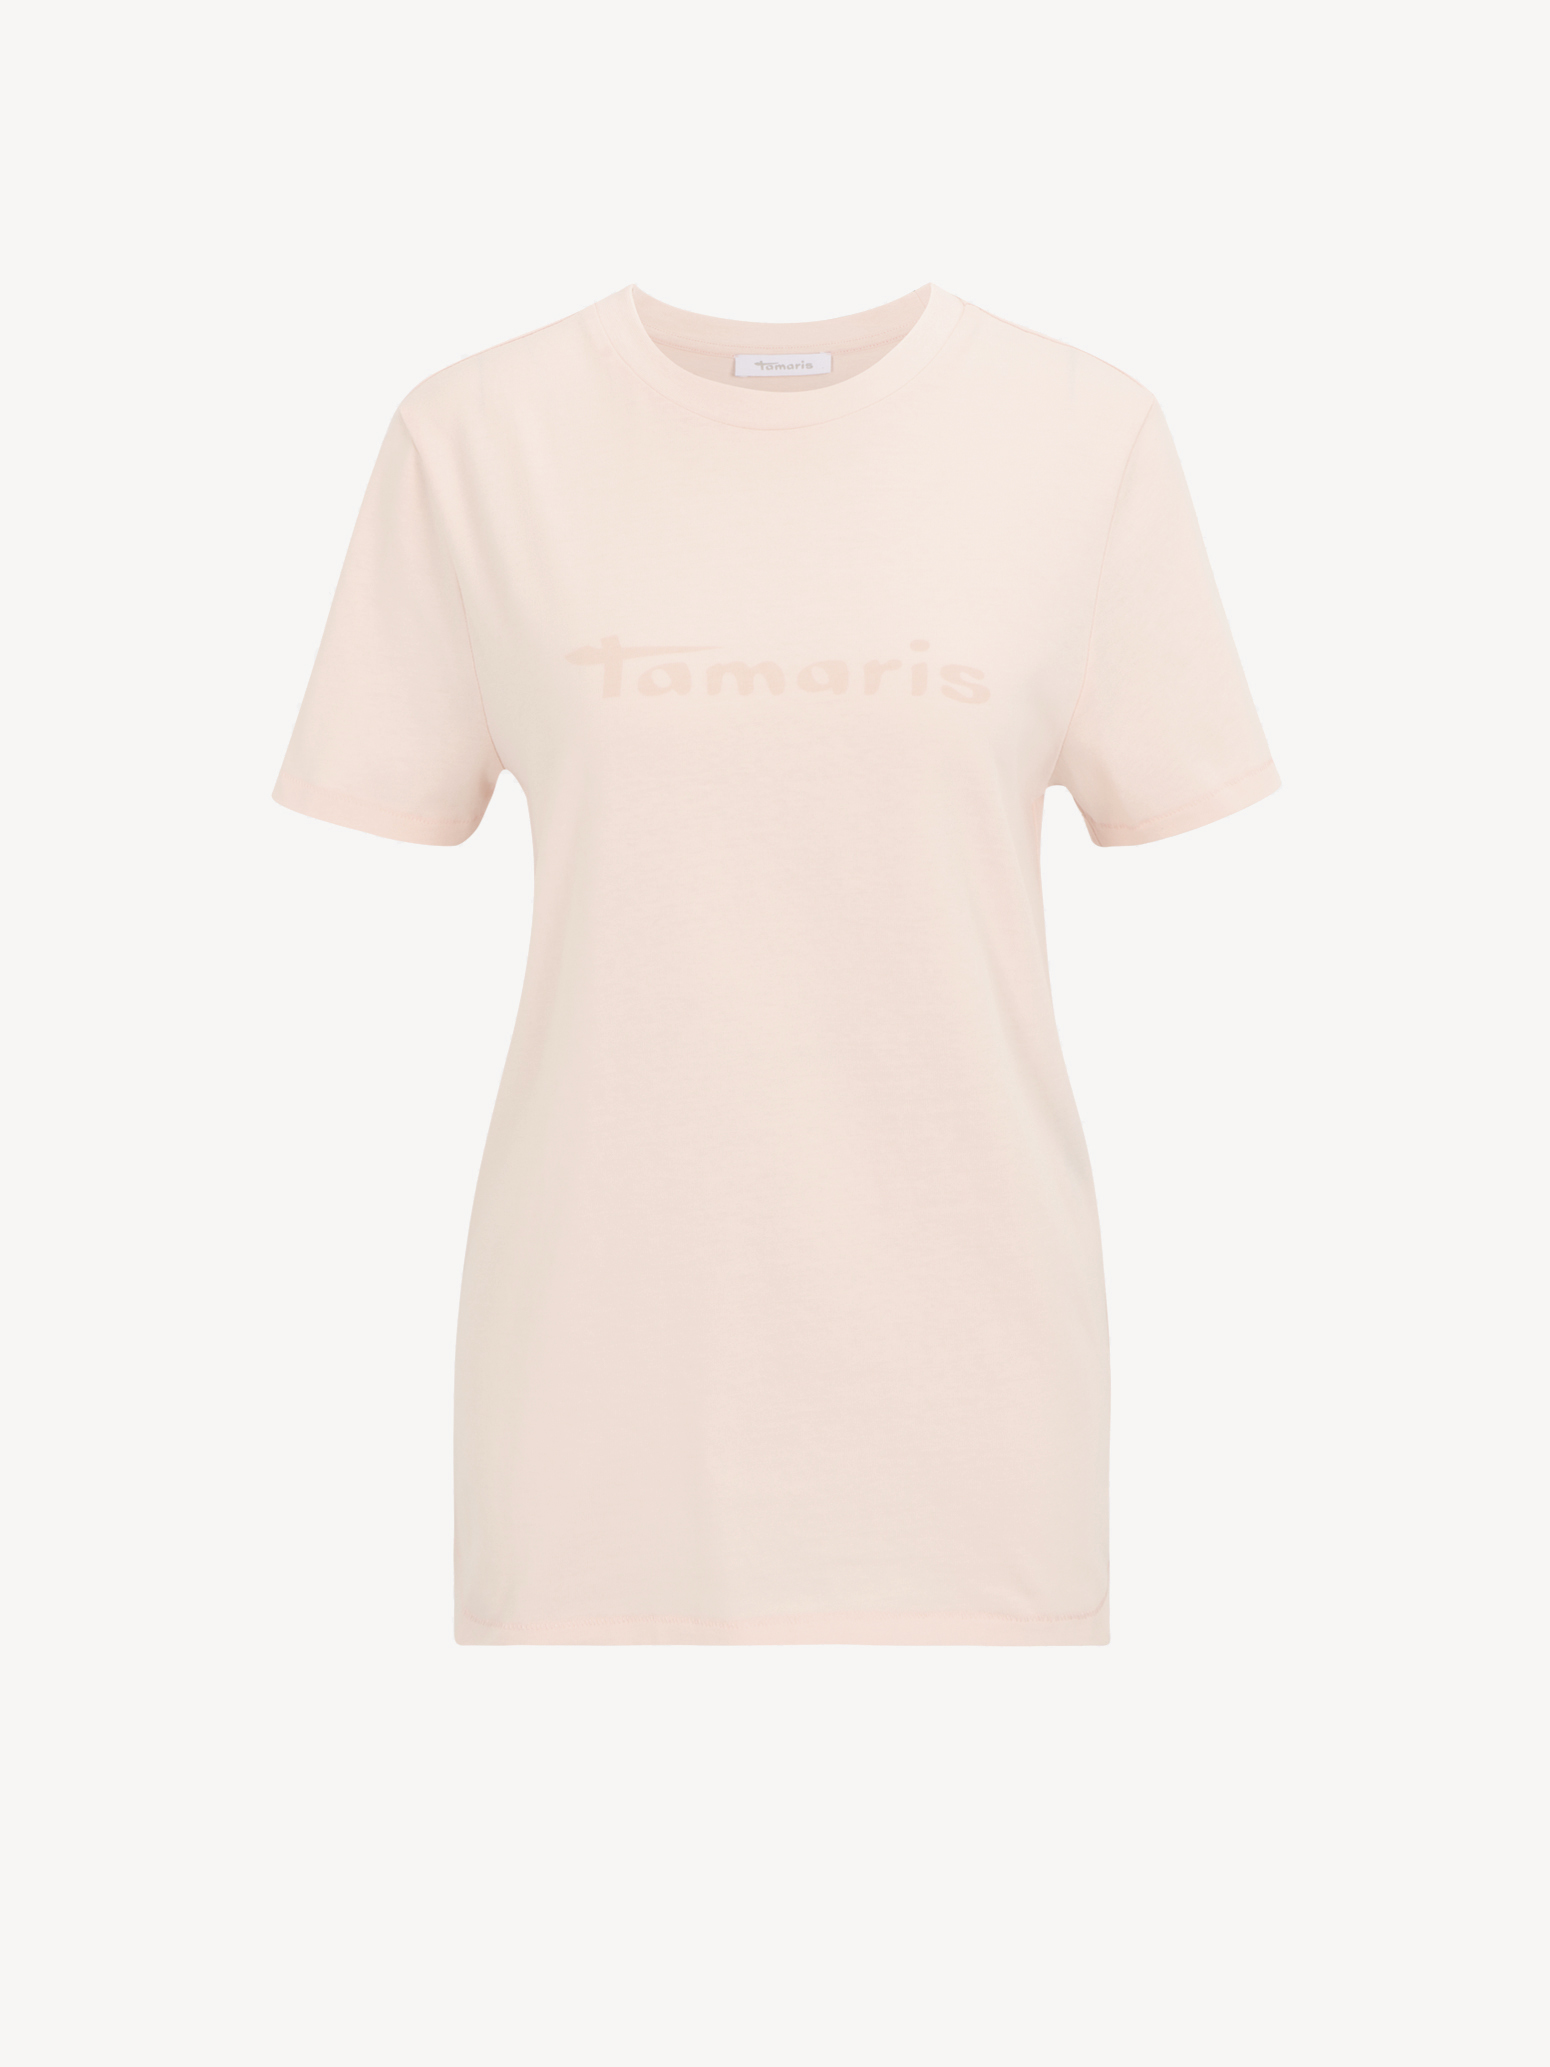 Μπλουζάκια Τ-σιρτ - ροζ